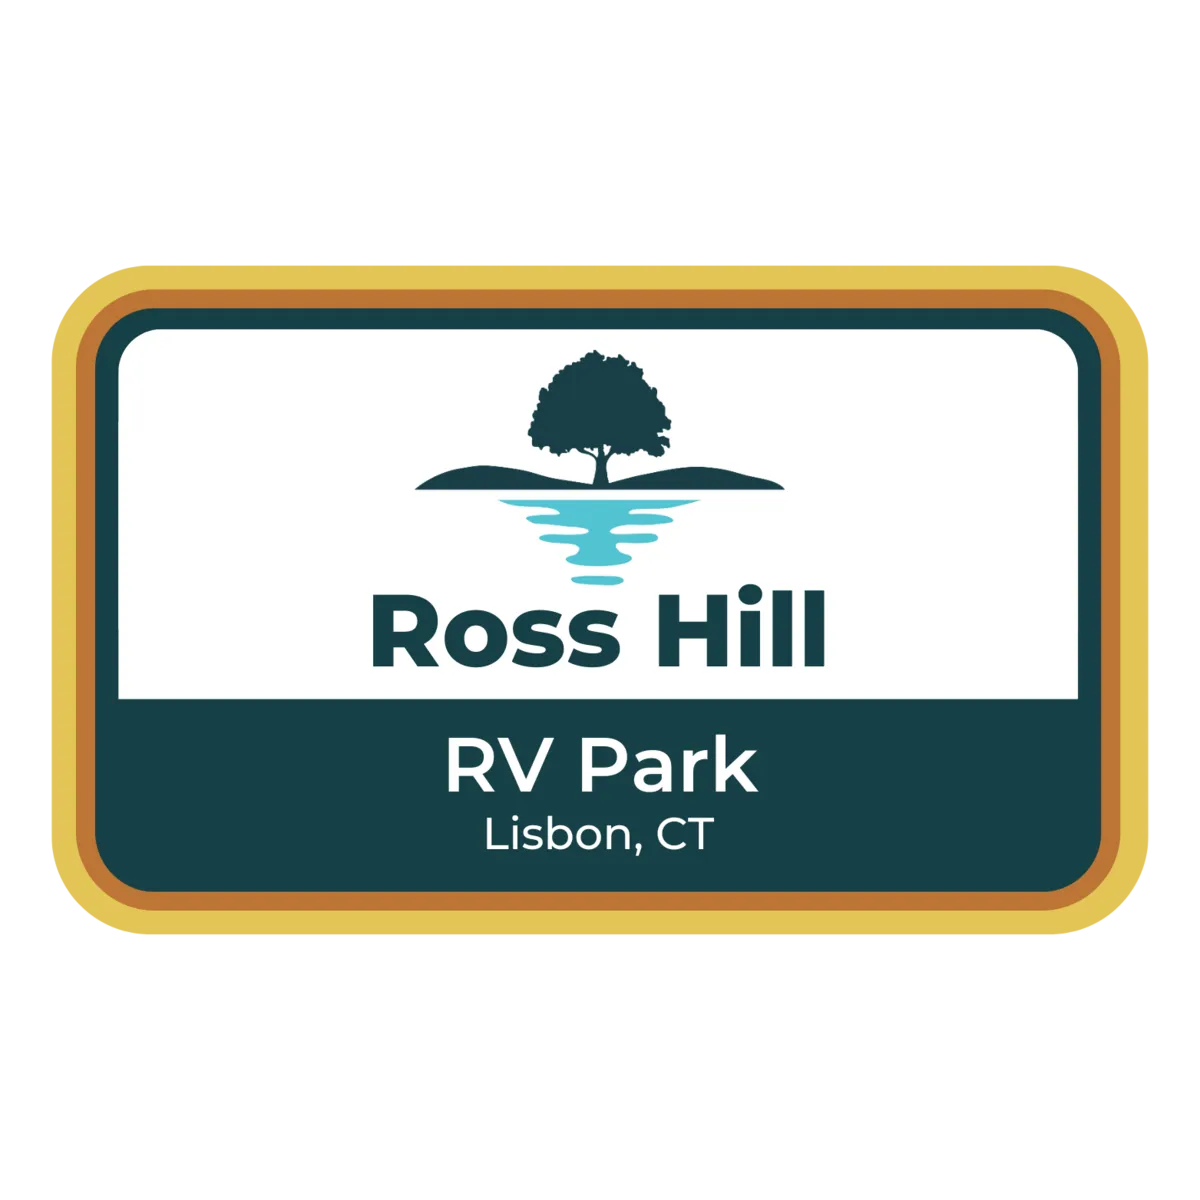 Ross Hill RV Park